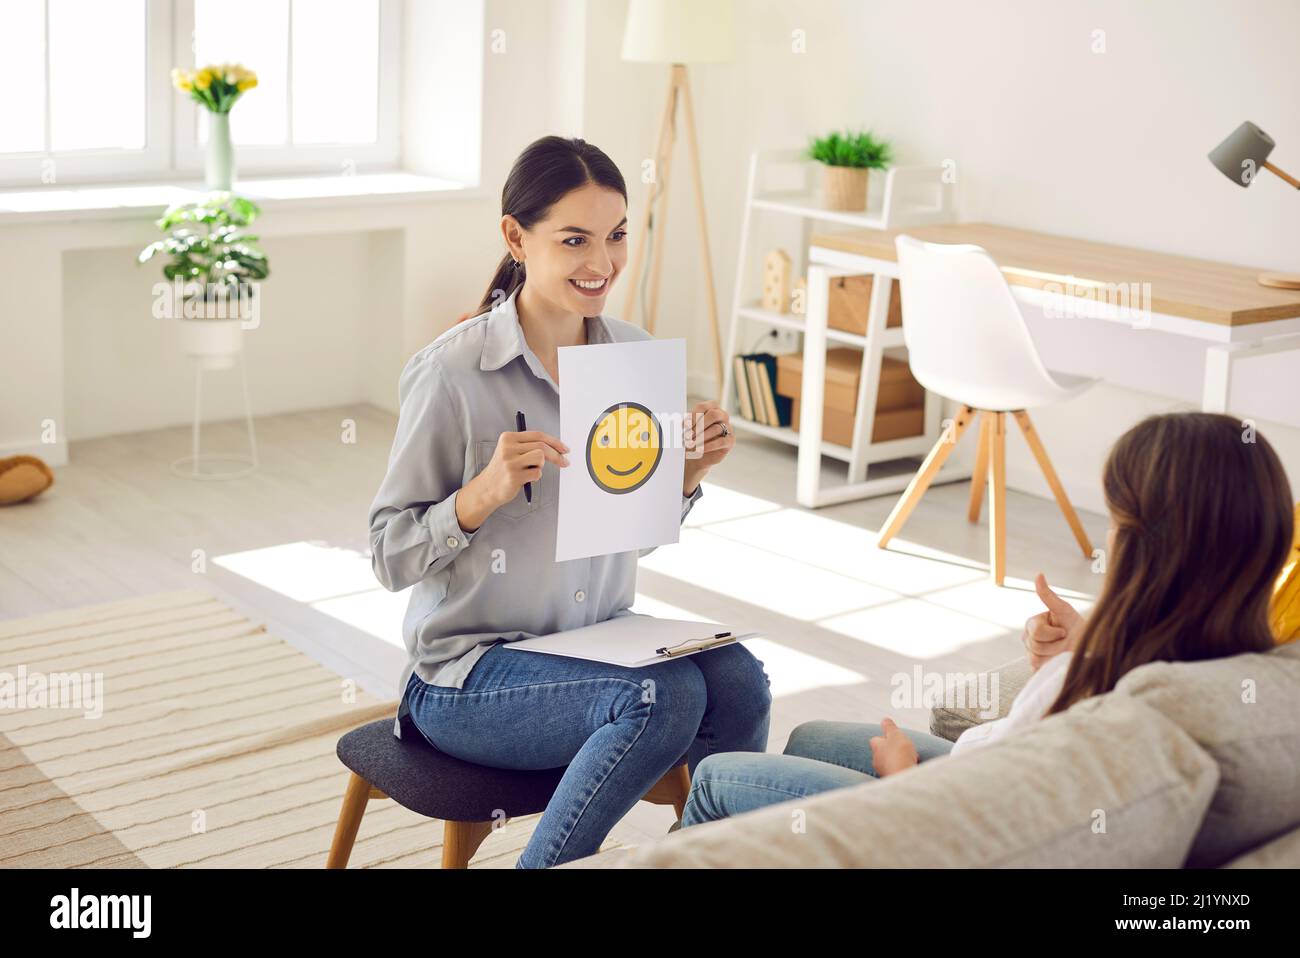 Thérapeute ou psychologue utilisant des images d'emoji tout en parlant à l'enfant des émotions Banque D'Images